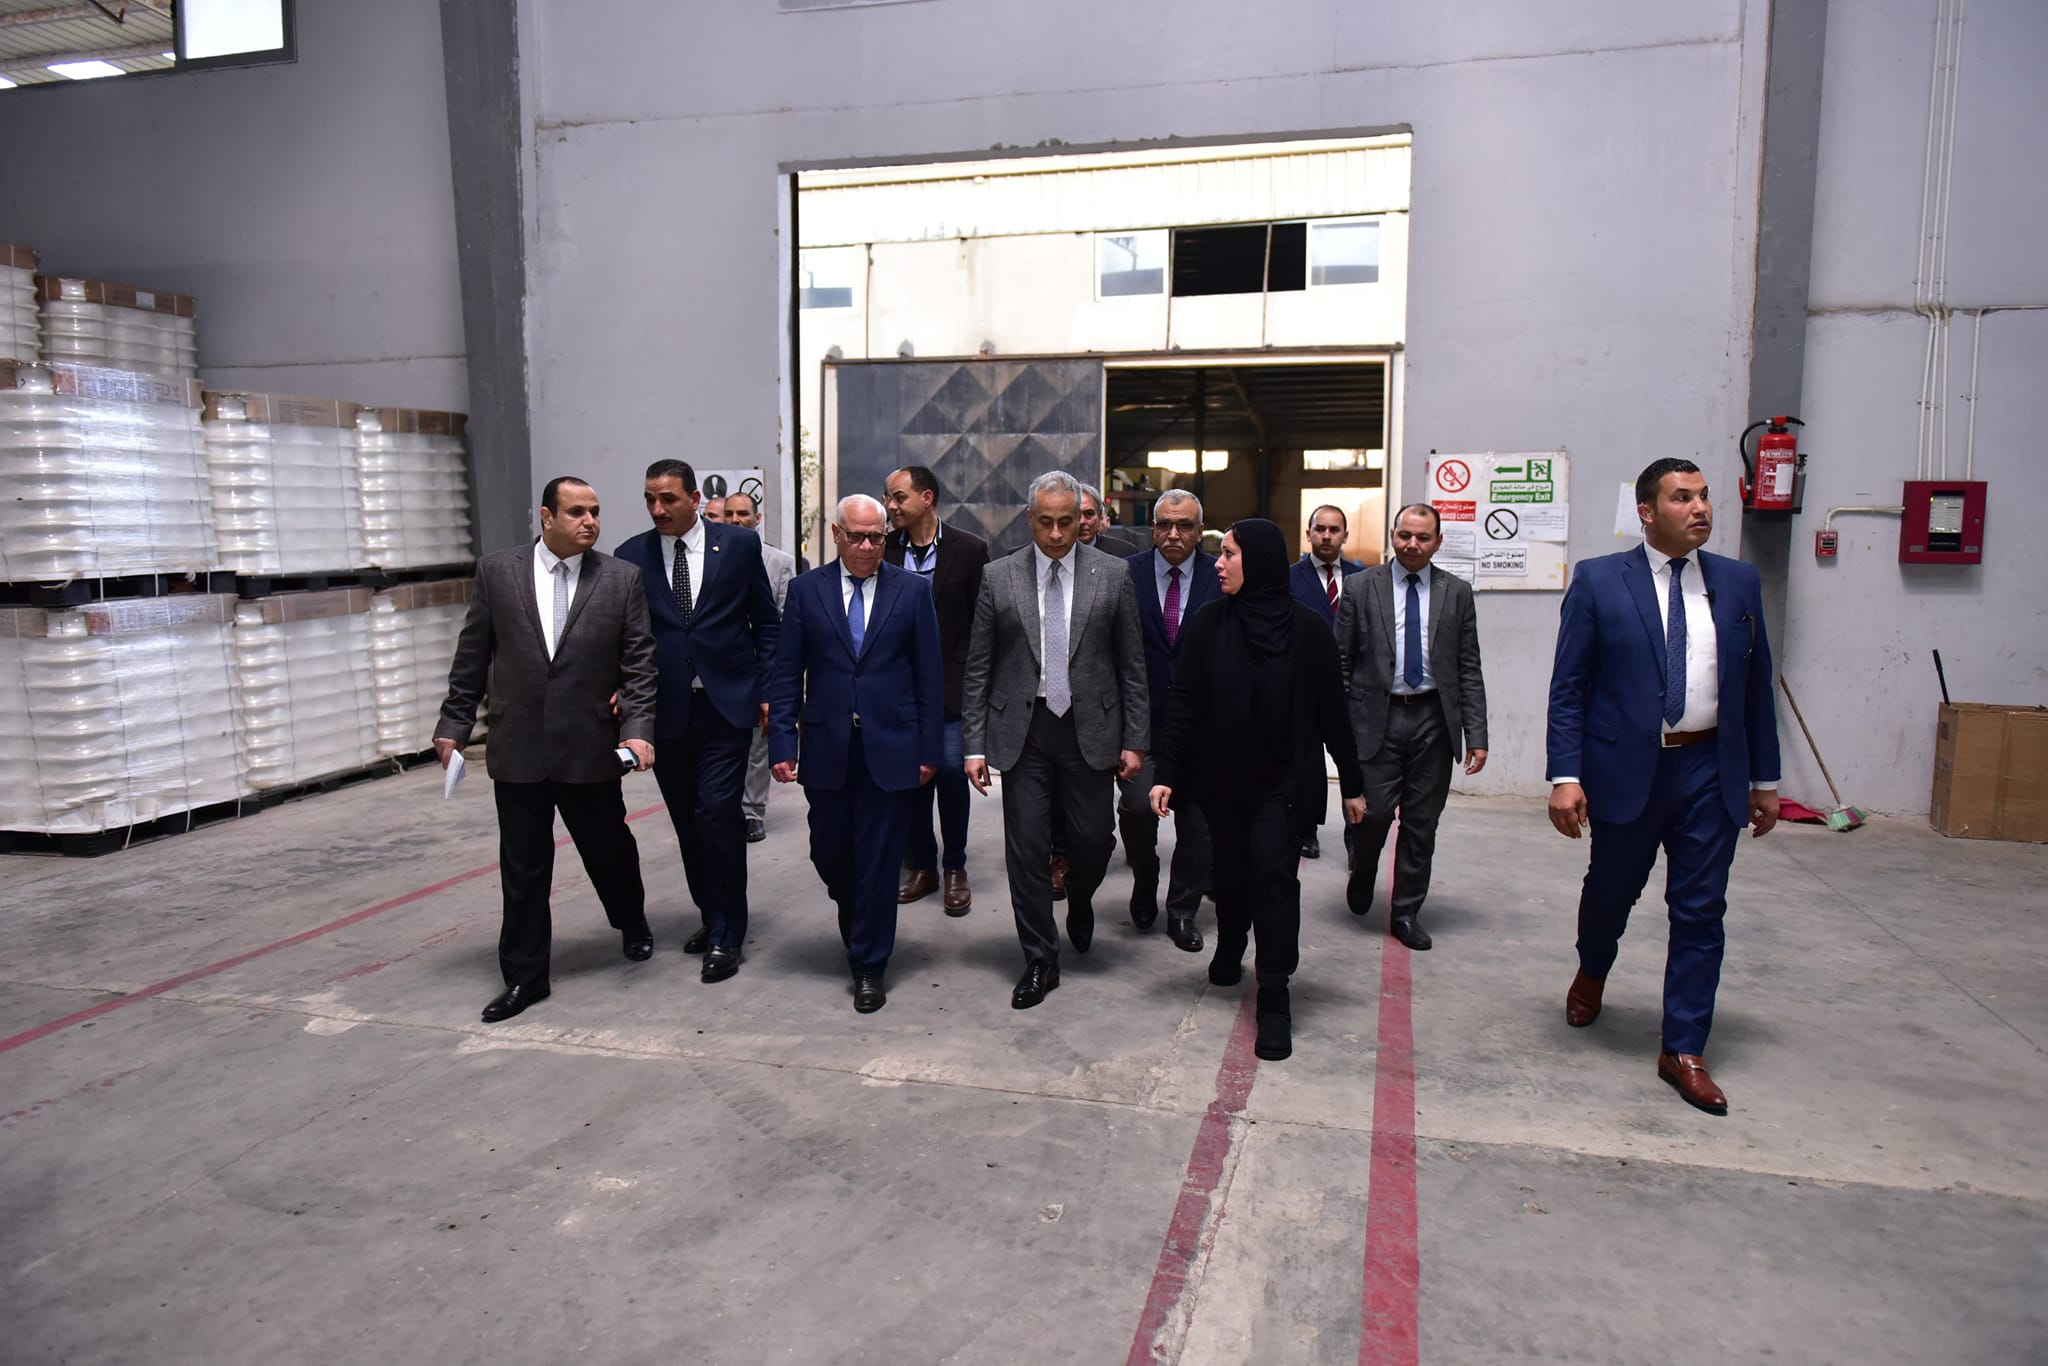 وزير العمل يصطحب محافظ بورسعيد لجولة داخل مصنع للبطاطين والسجاد والملابس الجاهزة (صور) 2